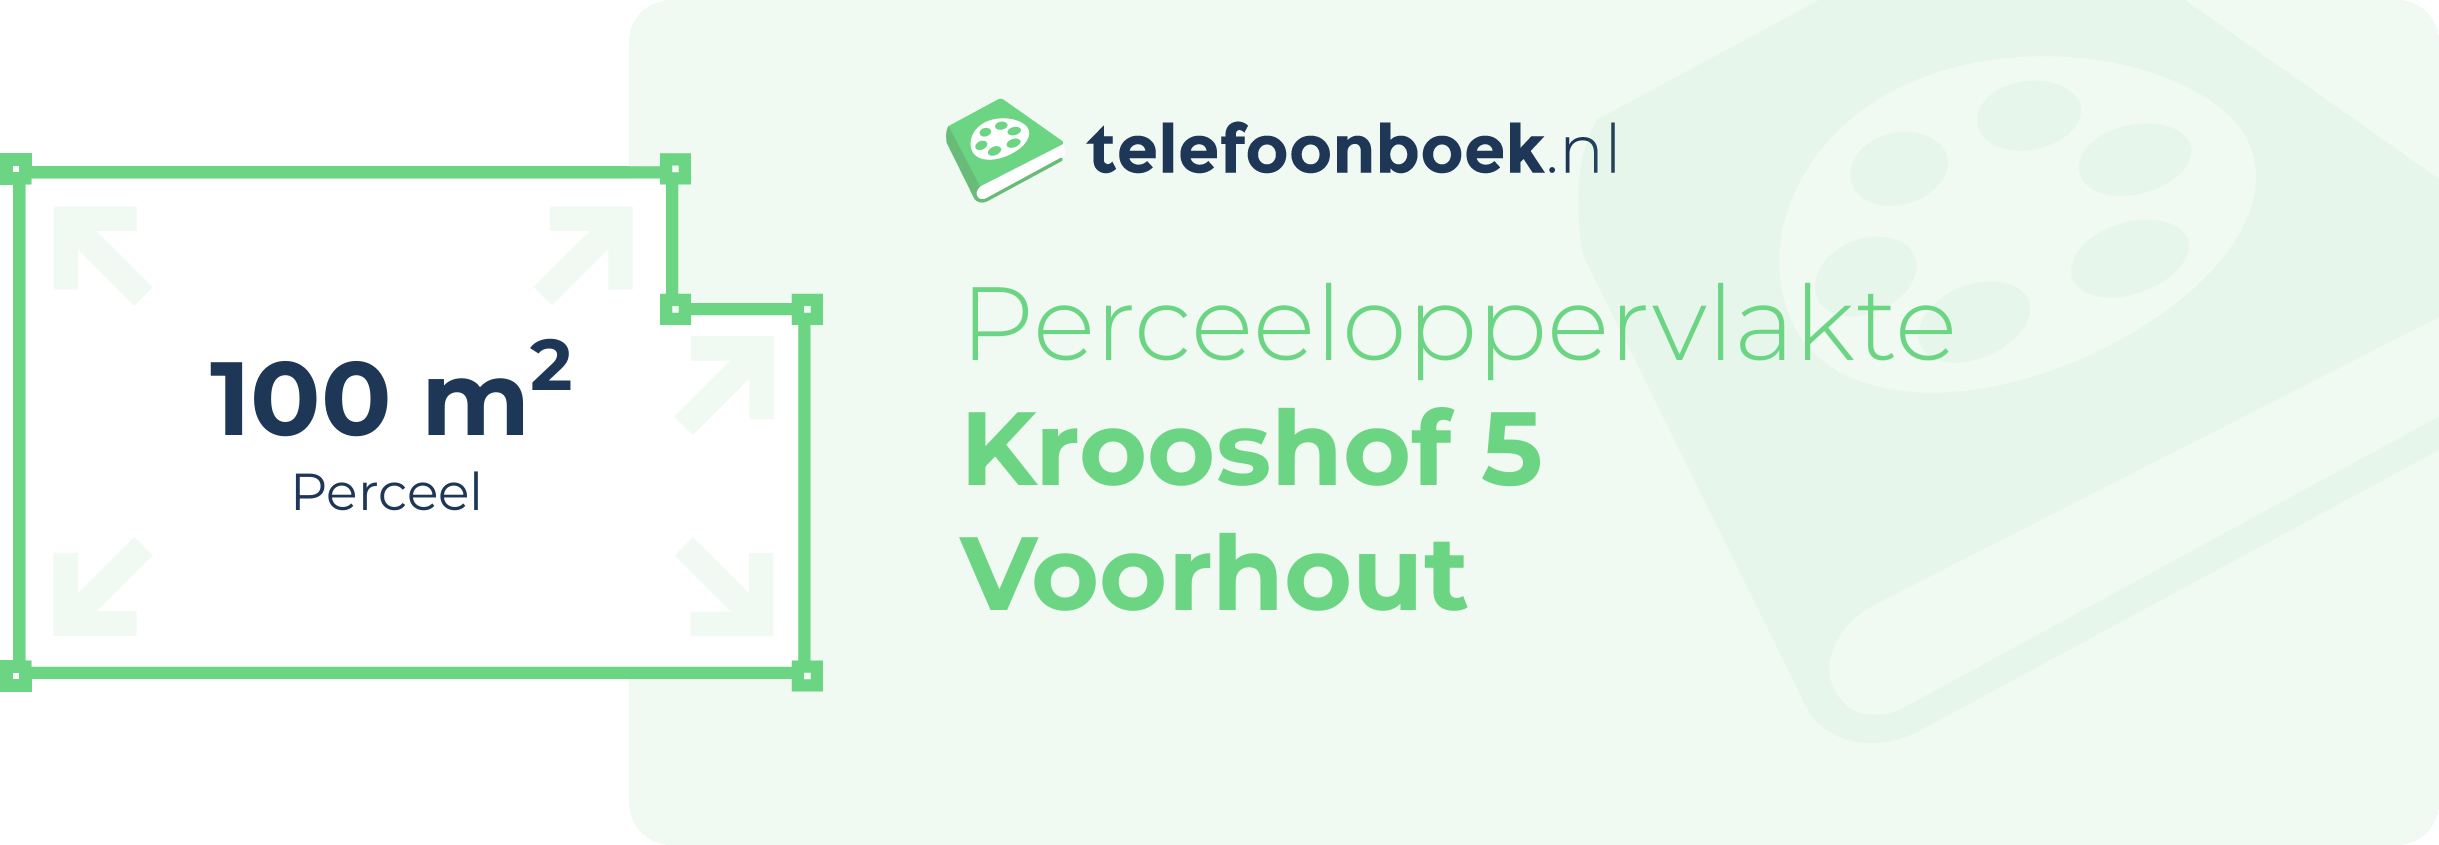 Perceeloppervlakte Krooshof 5 Voorhout